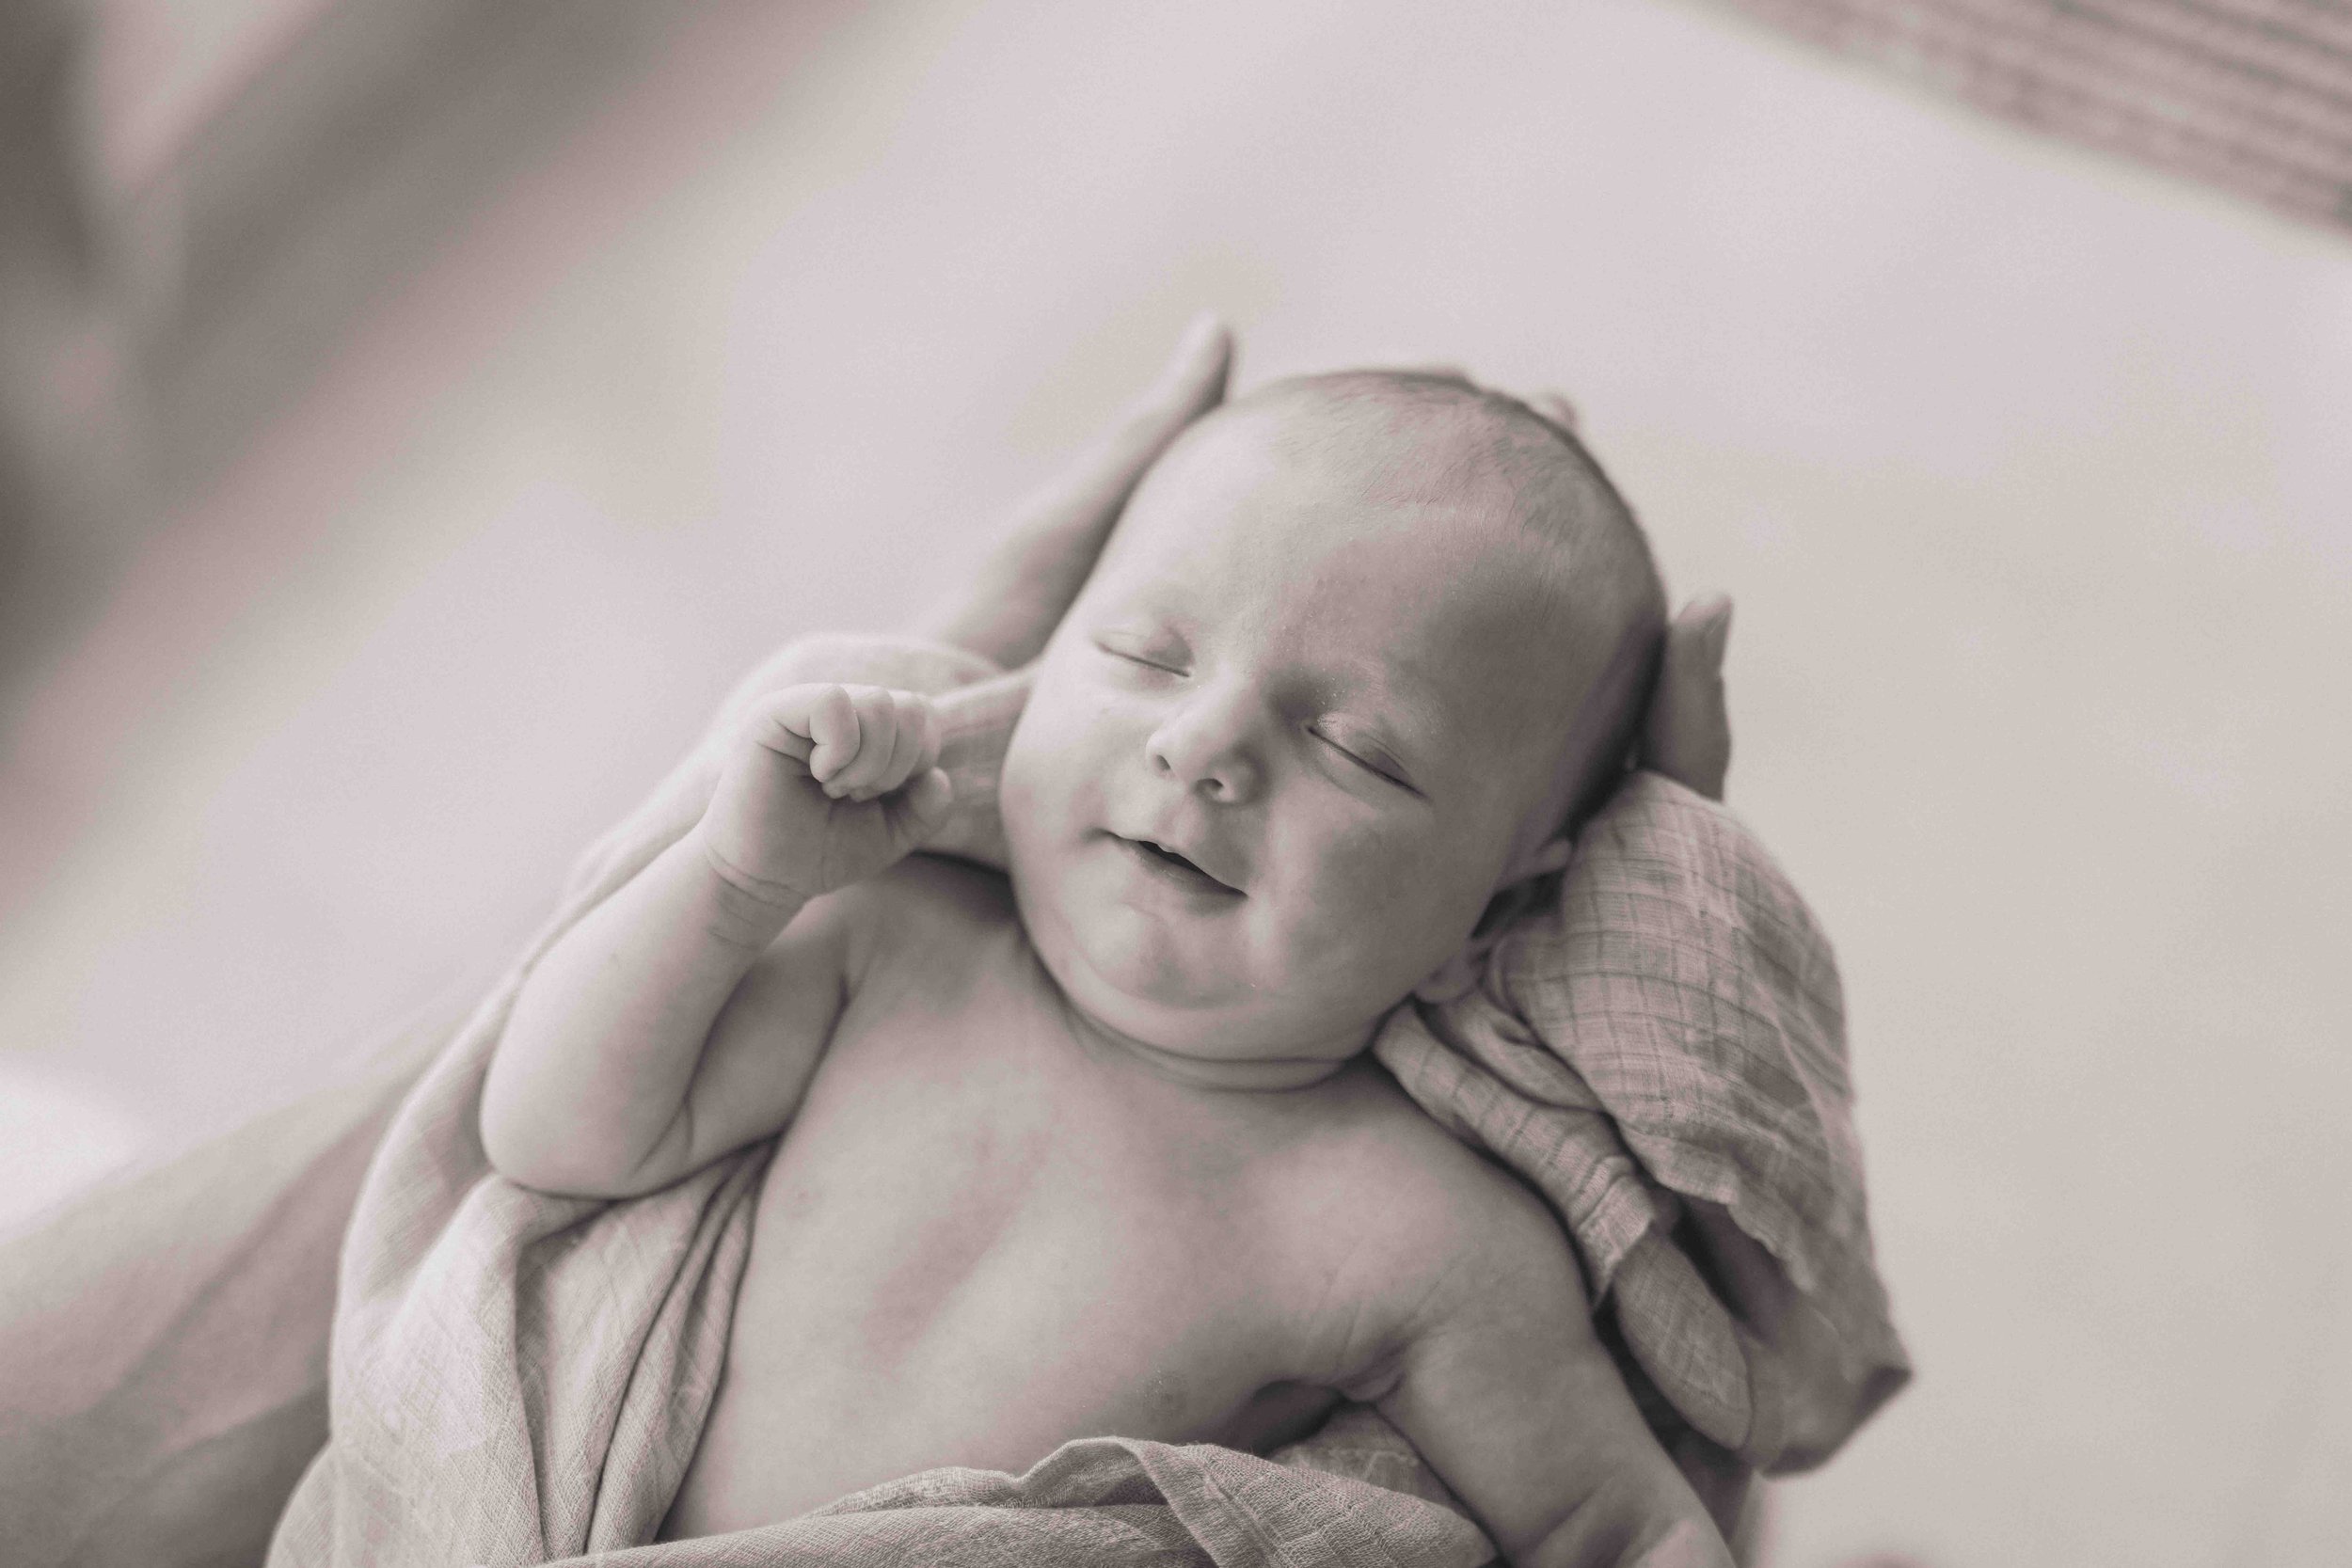 Newborn baby home visit shoot-4853.jpg